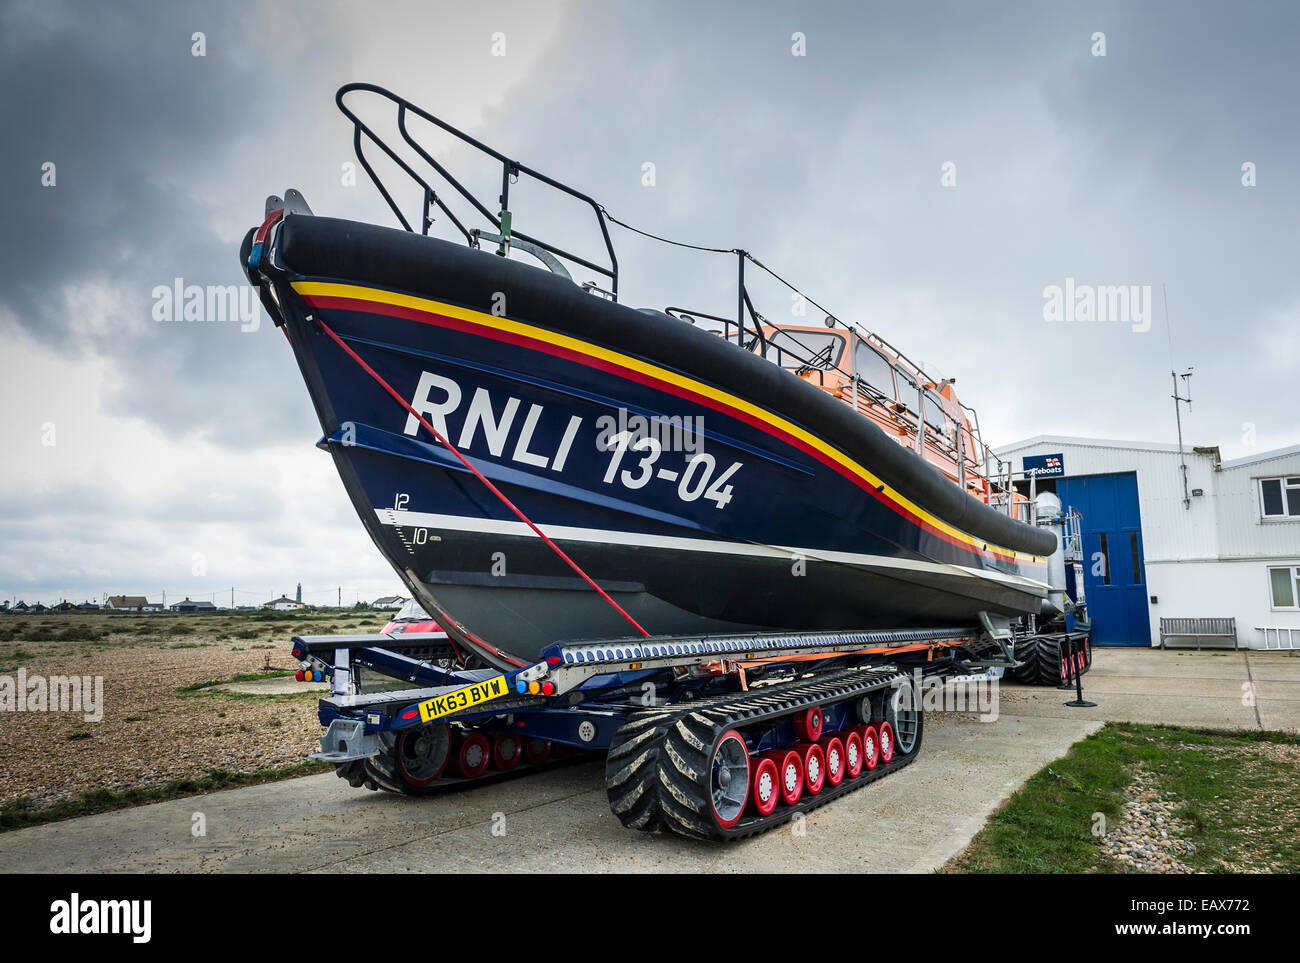 Le sauvetage de la classe Shannon RNLI Lifeboat 'Storm rider' sur une remorque prête à être lancée à Dungeness dans le Kent. Banque D'Images